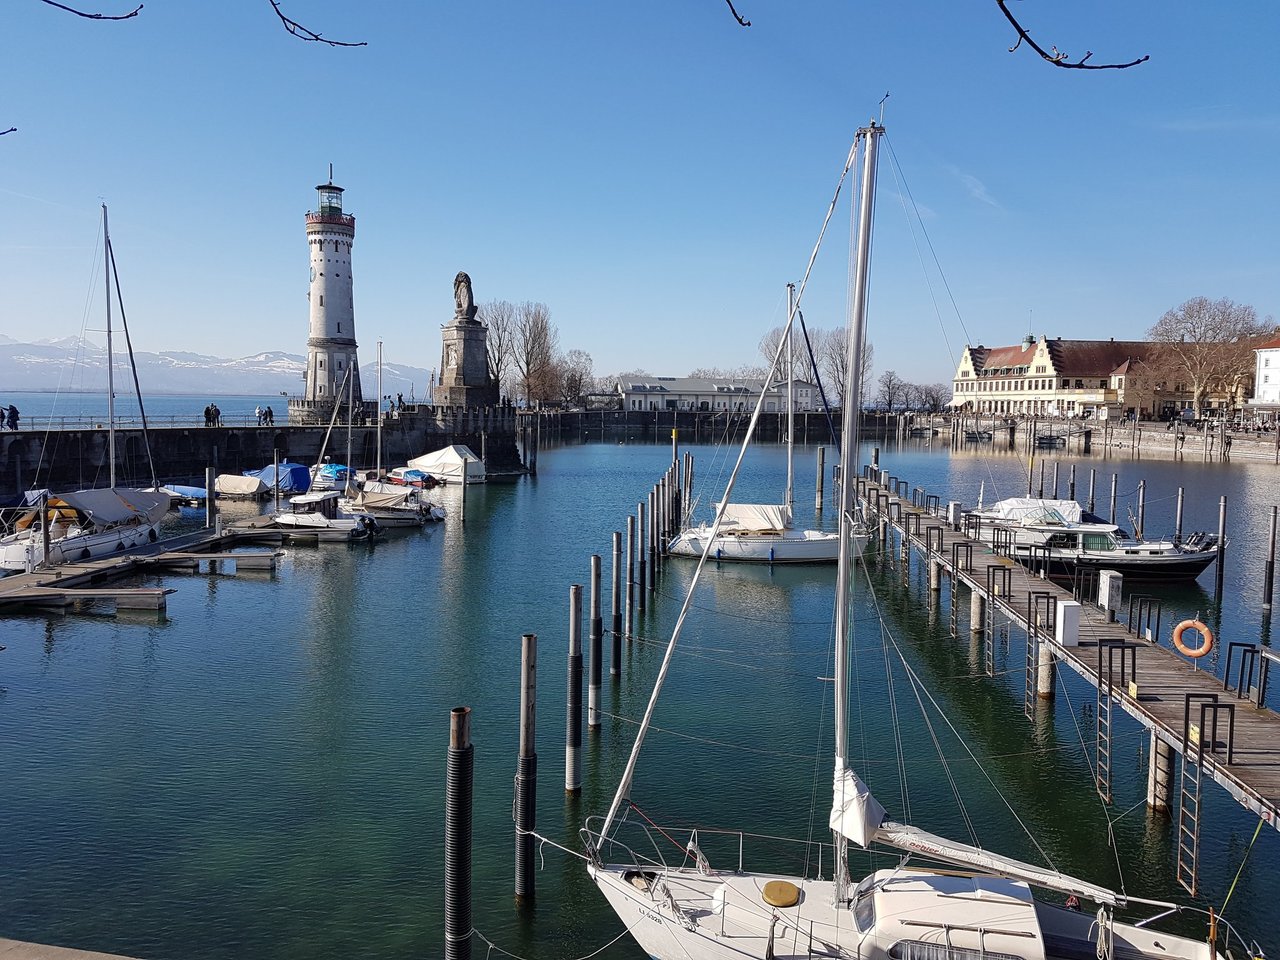 Stille im Hafen Boote noch im Winterschlaf Nur Möven segeln #Haiku #Lindau https://t.co/jPxISSjBQL